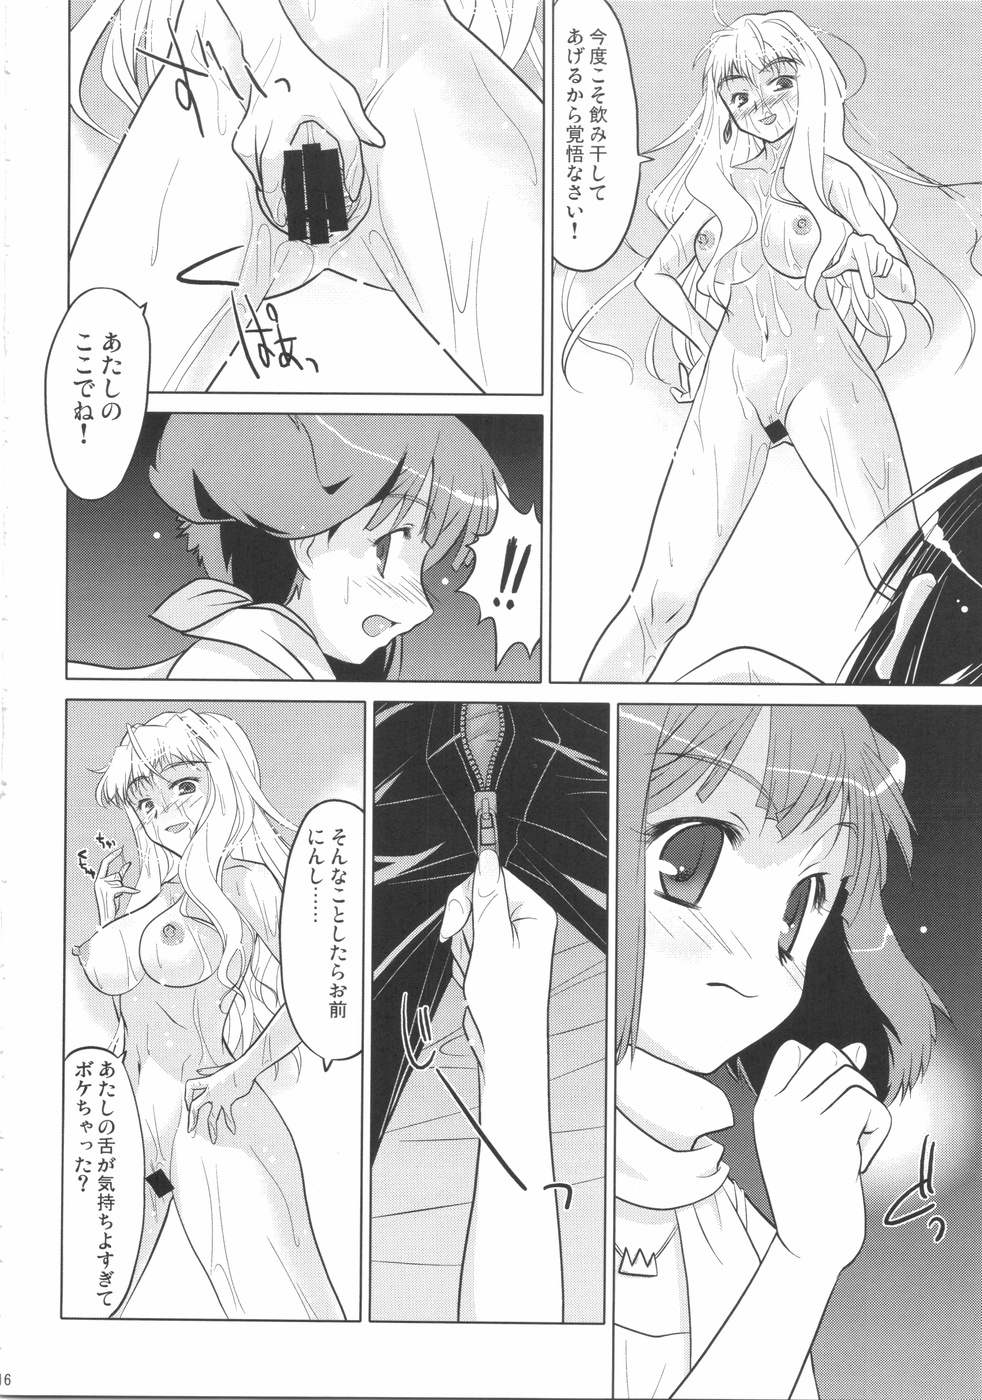 （C74）【スピリットガイド】歌姫タリーホ!! （マクロスFRONTIER）